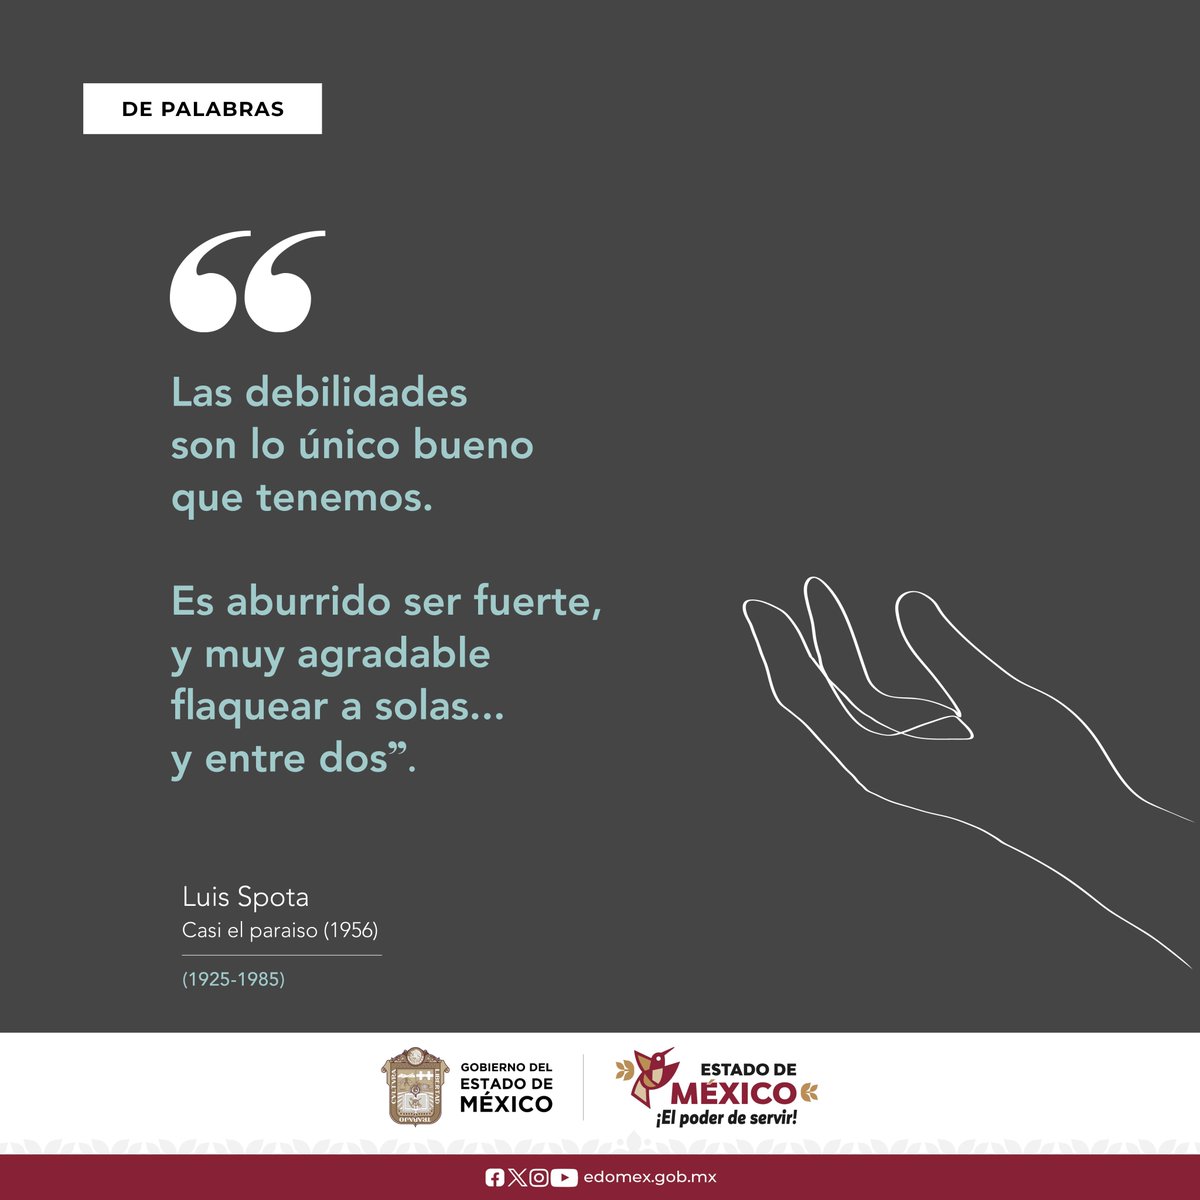 #LuisSpota falleció el 20 de enero de 1985, en la #CDMX, su obra destacó por su crítica social y política, su novela #CasiElParaíso es una obra audaz y atrevida y vertiginosa, que explora la corrupción, la desigualdad y los problemas de la sociedad mexicana. #Literatura #AGEMÉX